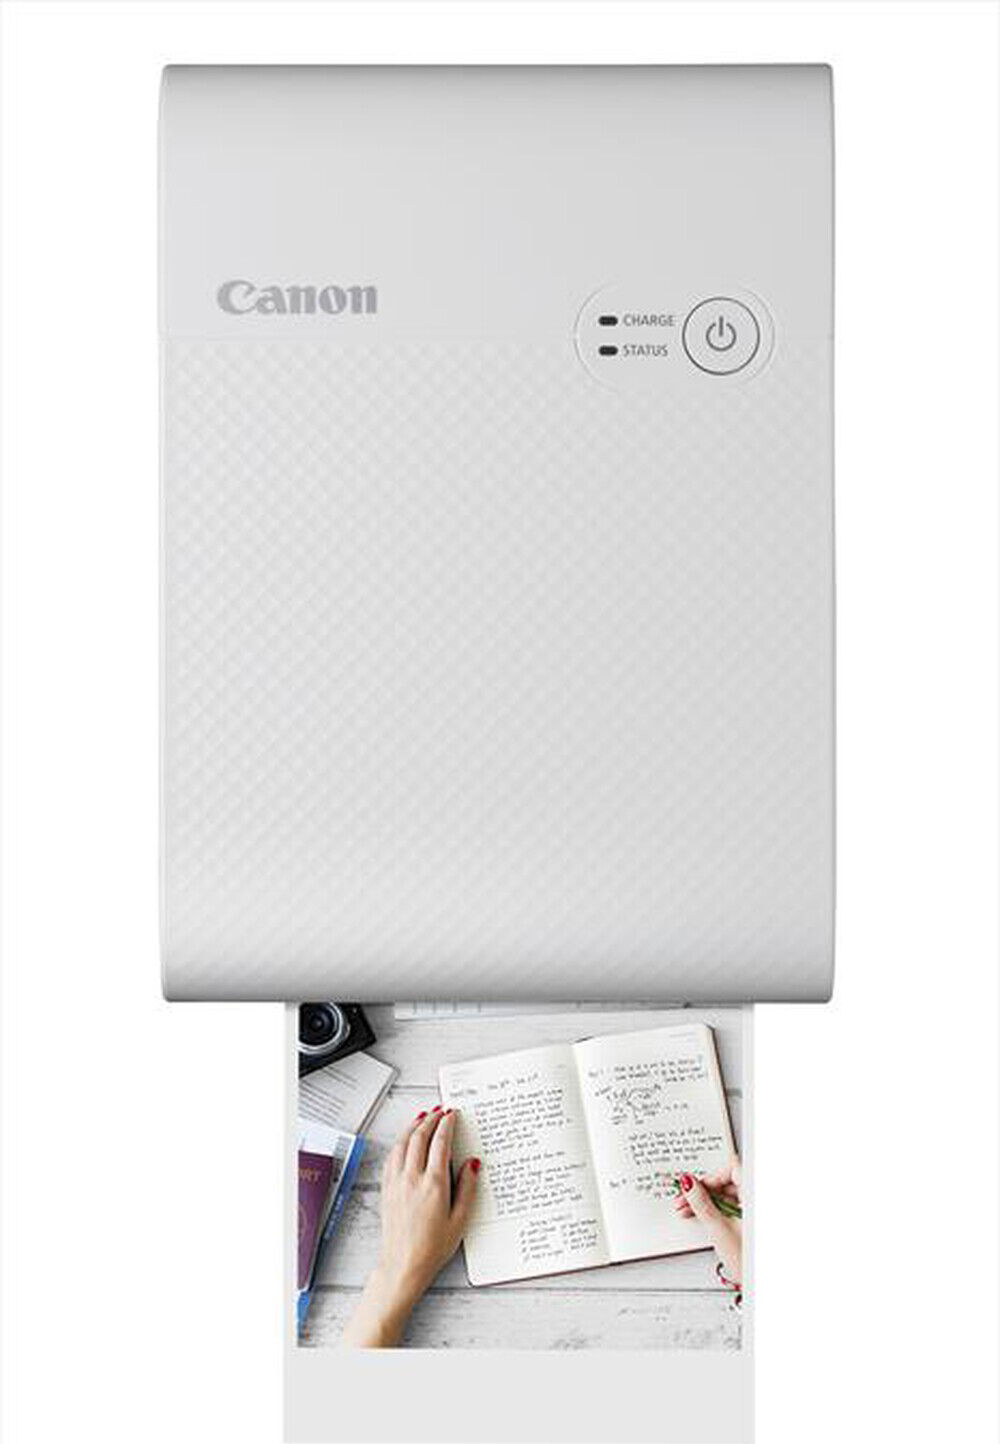 canon qx10 stampante portatile a sublimazione a colori wifi stampe su carta quadrata colore bianco - qx10 selphy square